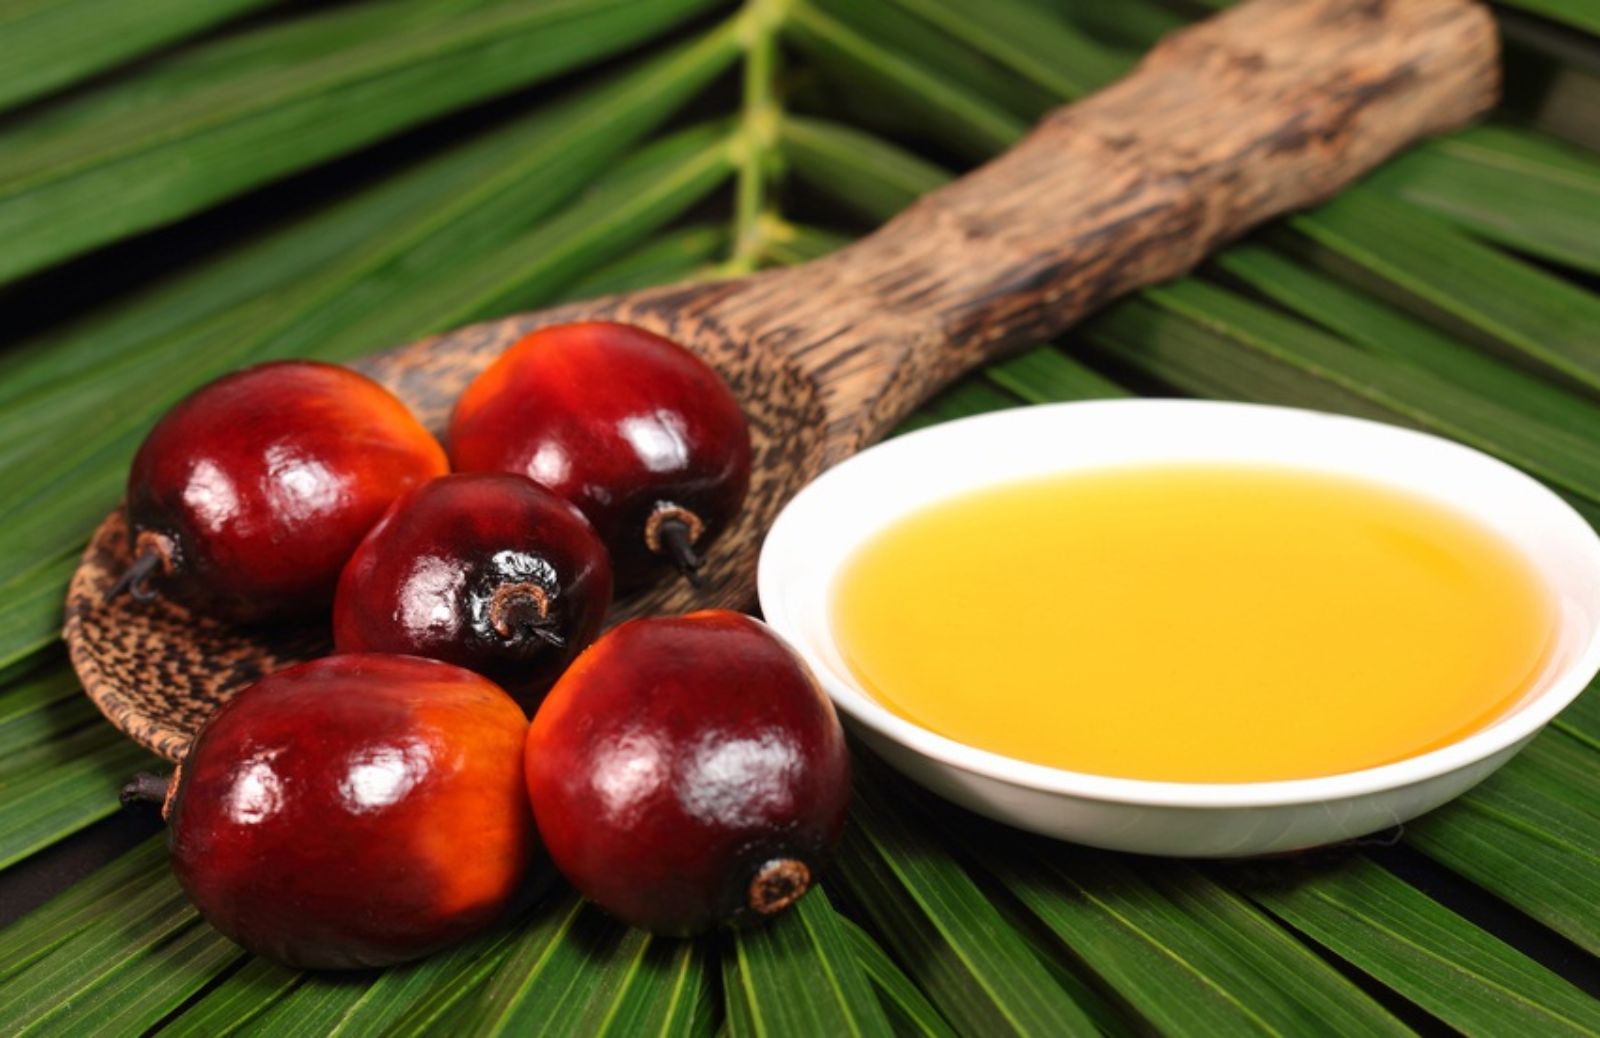 E' vero che l'olio di palma fa male?